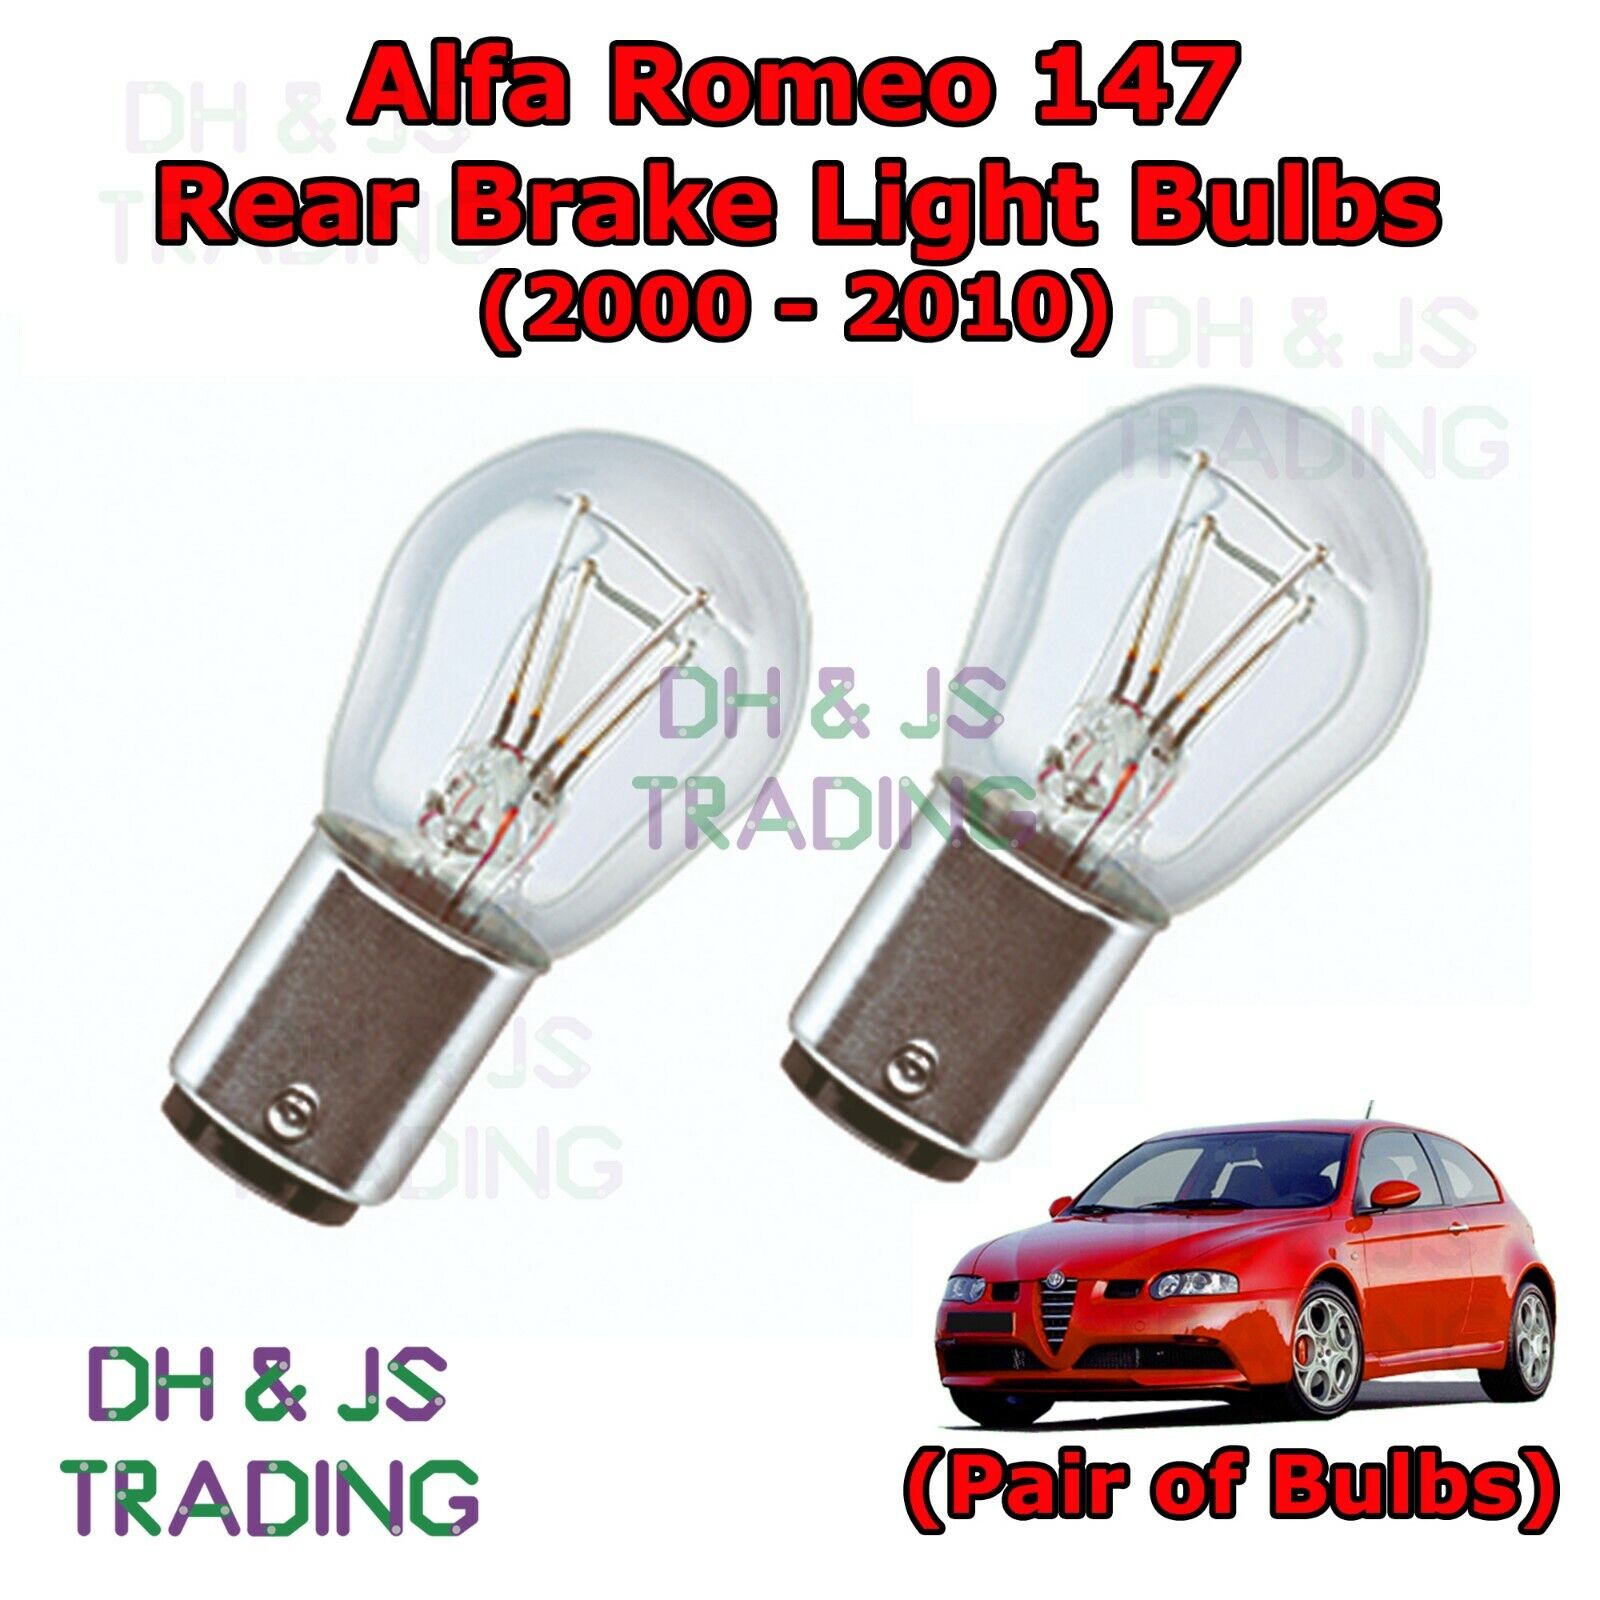 For Alfa Romeo Rear Brake Light Bulbs Pair of Stop / Tail Light (00-10) | eBay